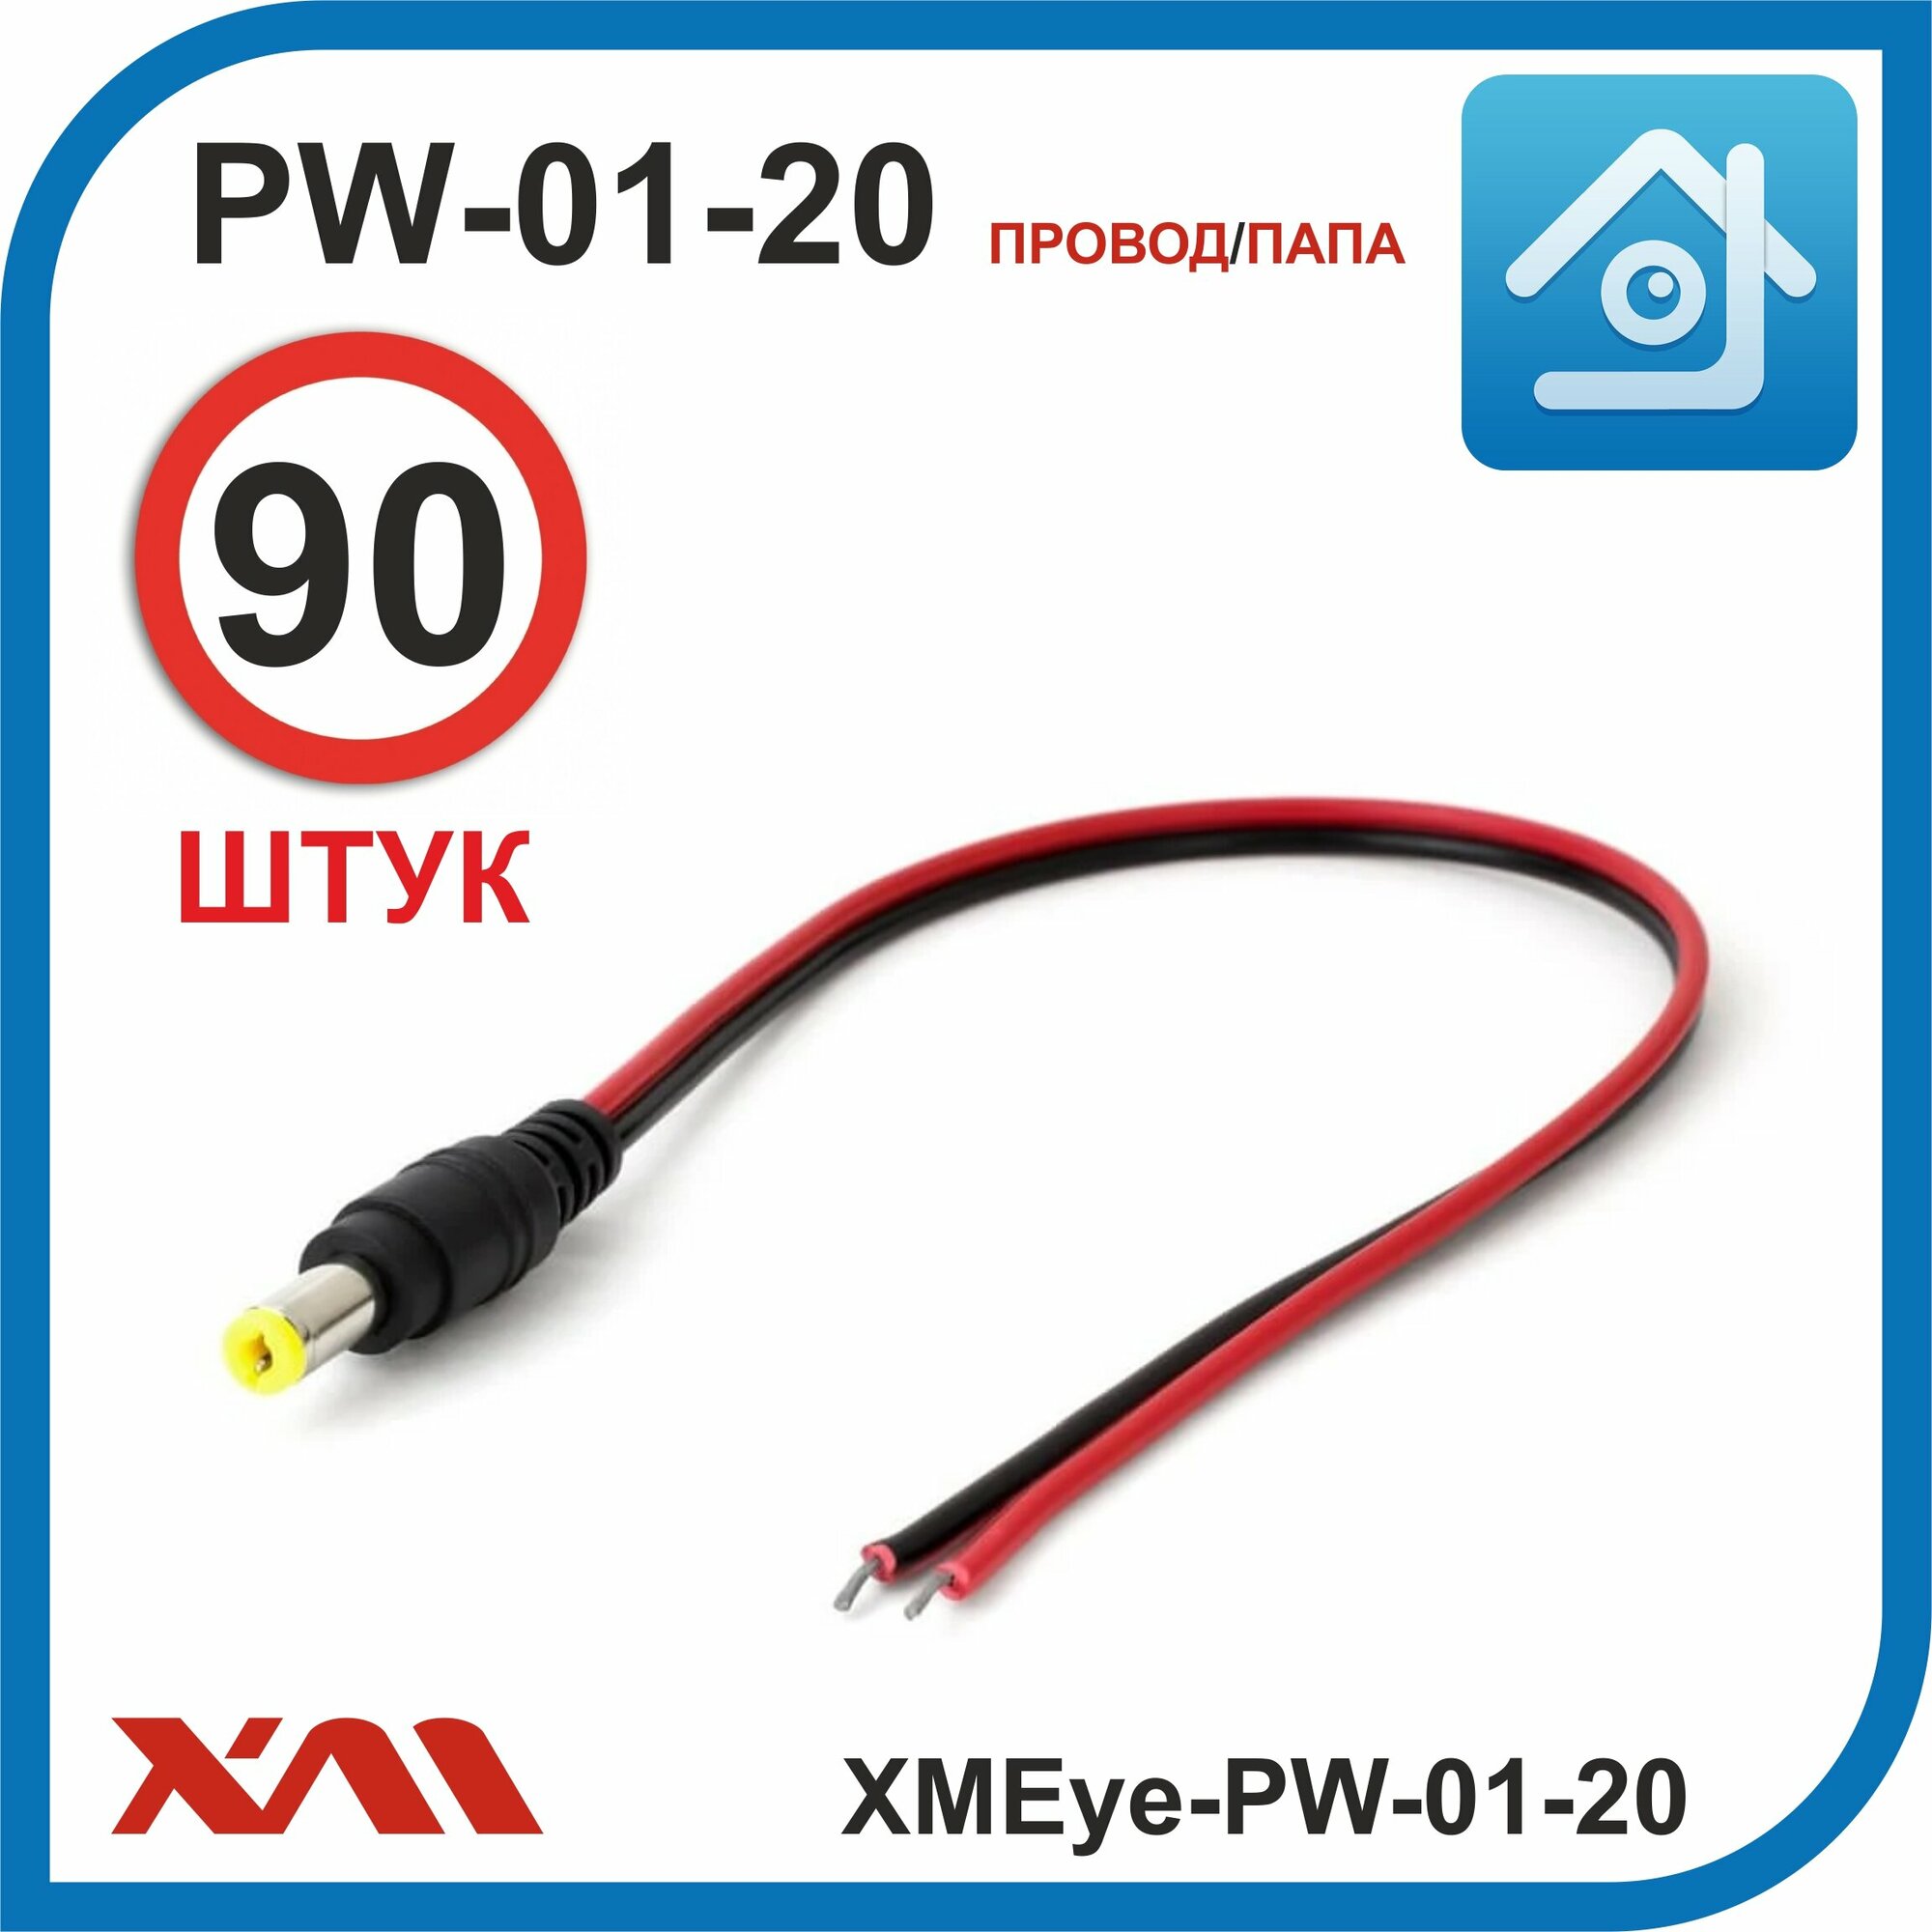 XMEye-PW-01-20 (провод/мама). Разъем для питания камер видеонаблюдения с кабелем 20 см. Комплект: 90 шт.